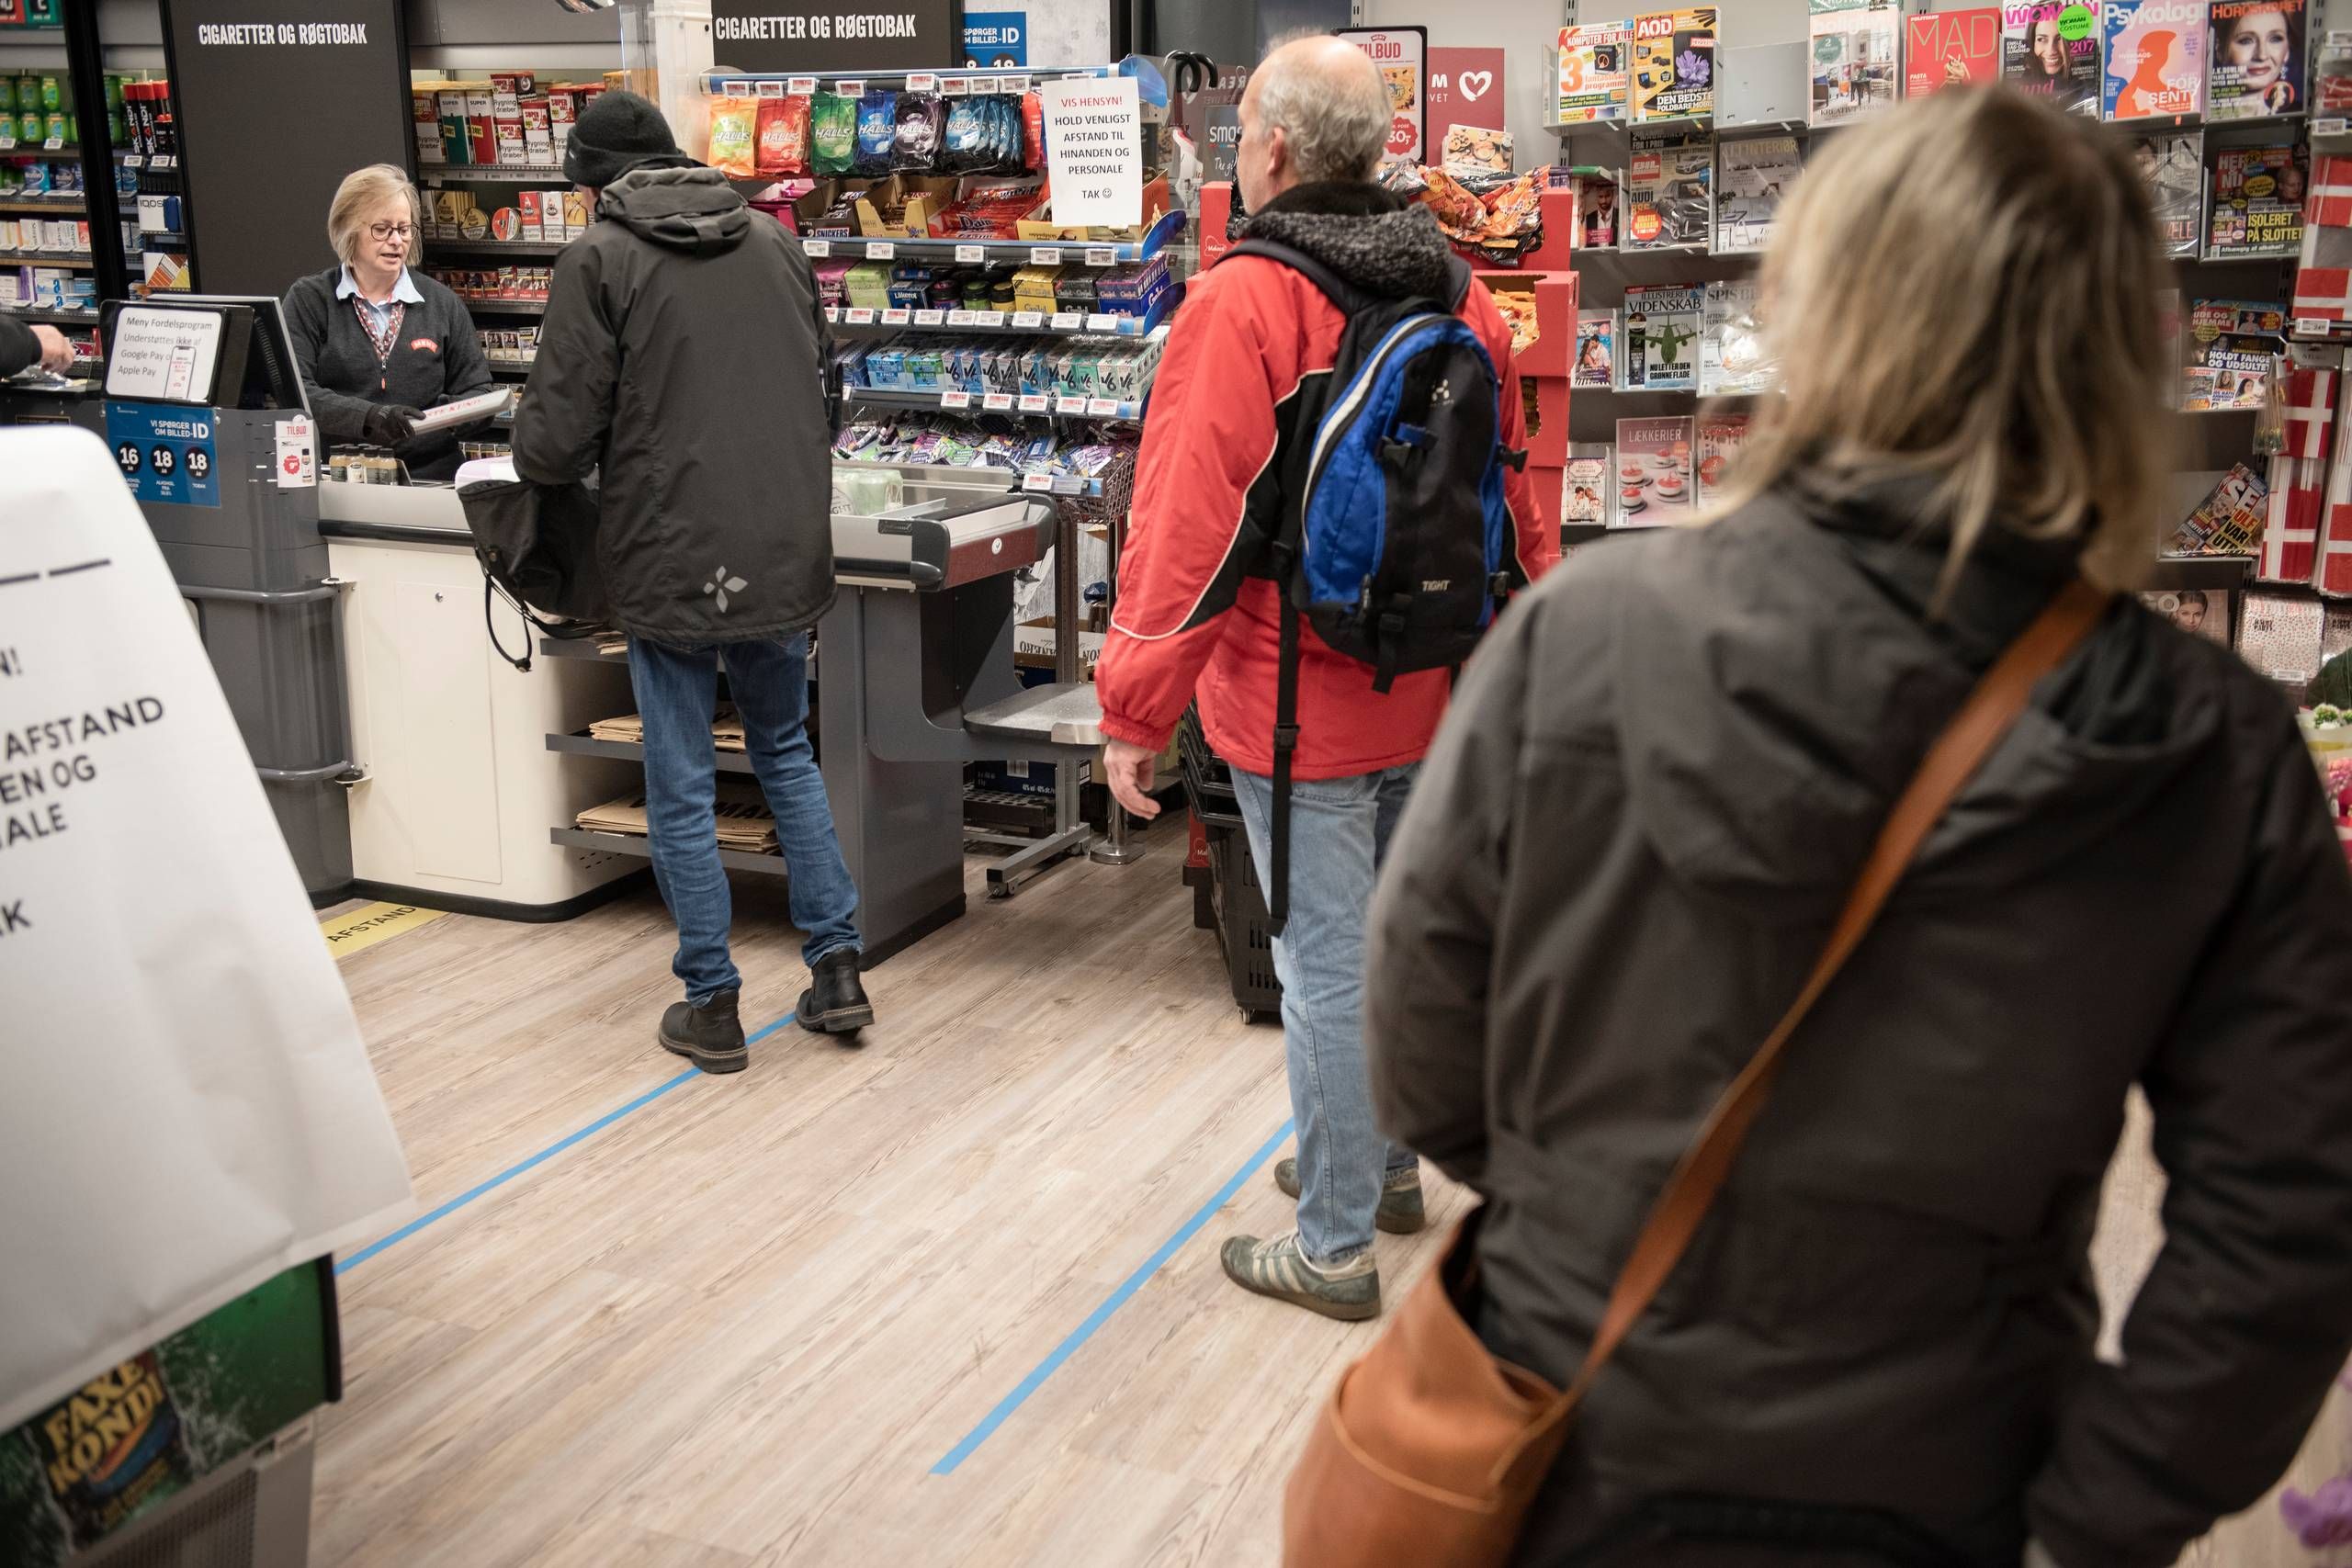 Sommetider Menagerry Slik Coronakrisen: Der skal være længere mellem kunderne i butikkerne